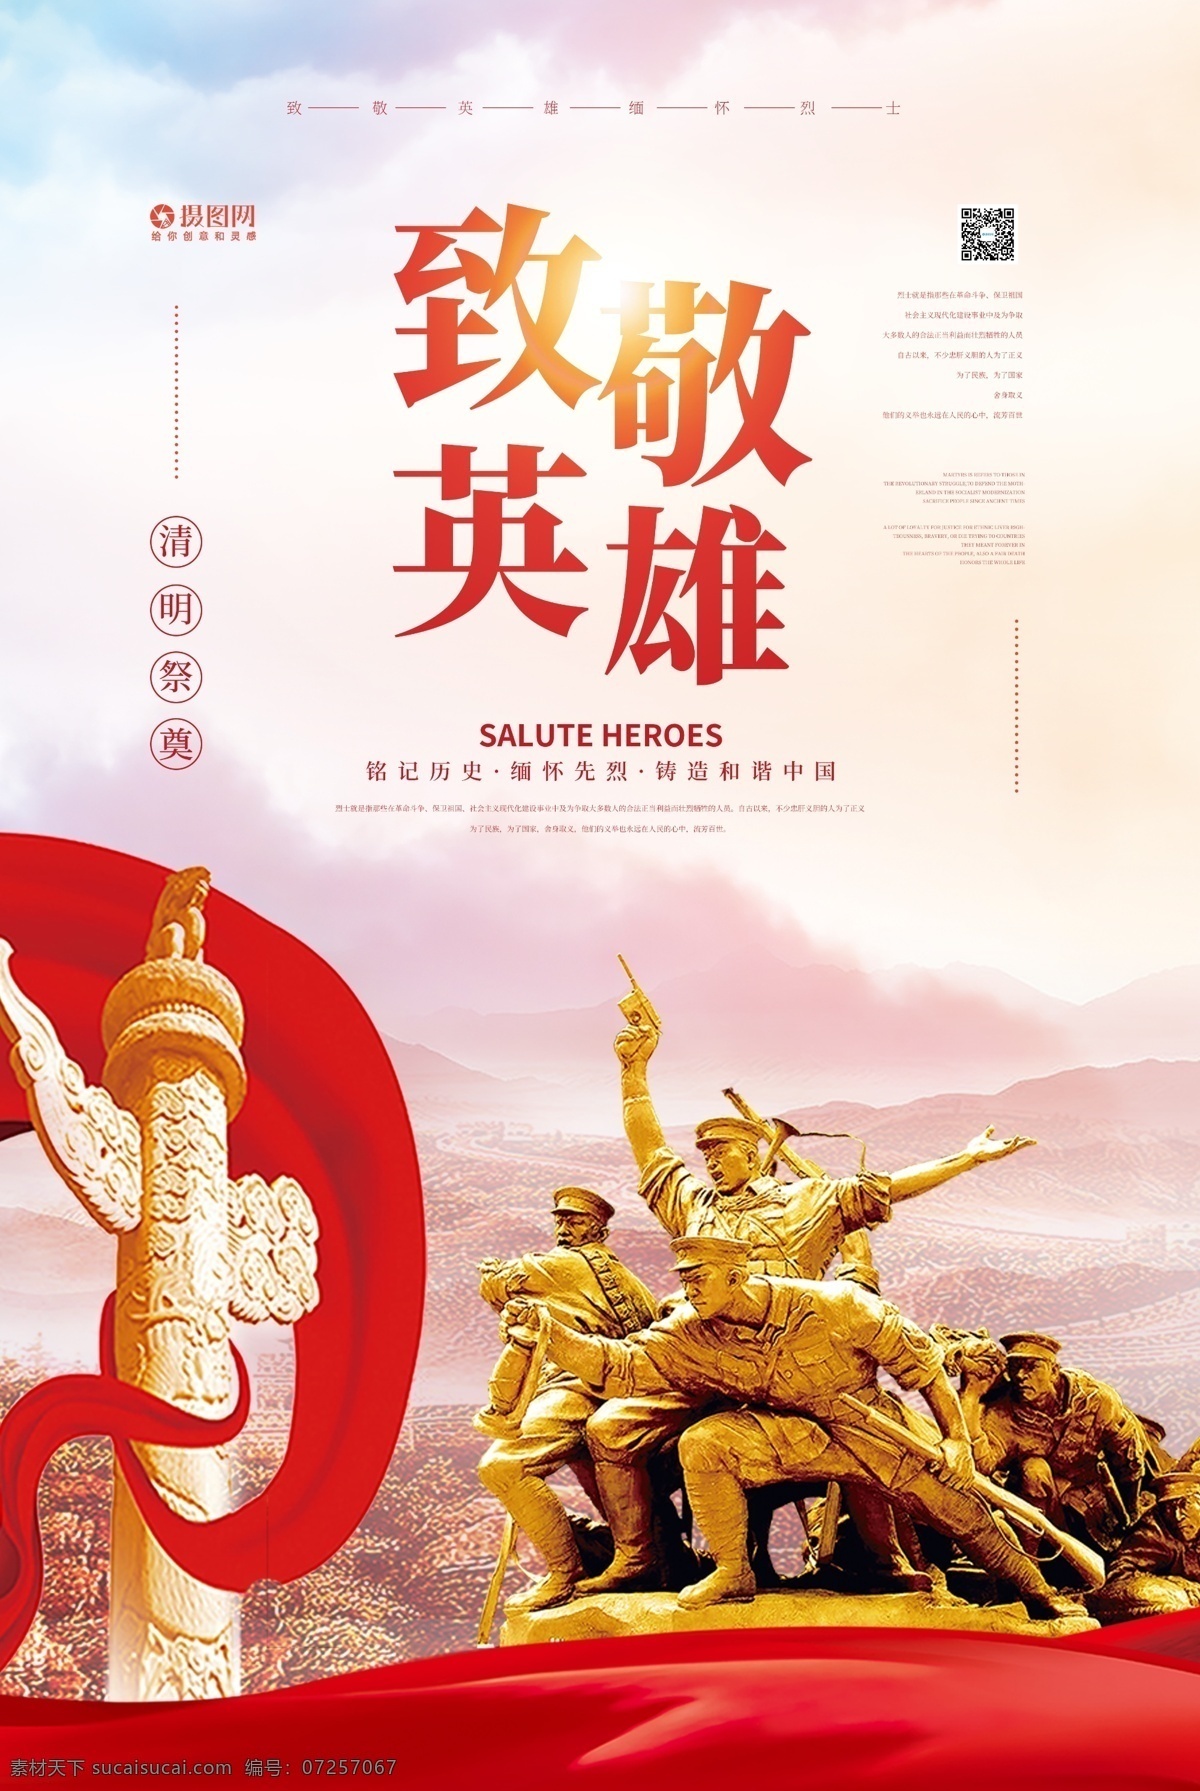 清明节 纪念 烈士 致敬 英雄 海报 中国 传统 清明 祭奠 传统节日 战士